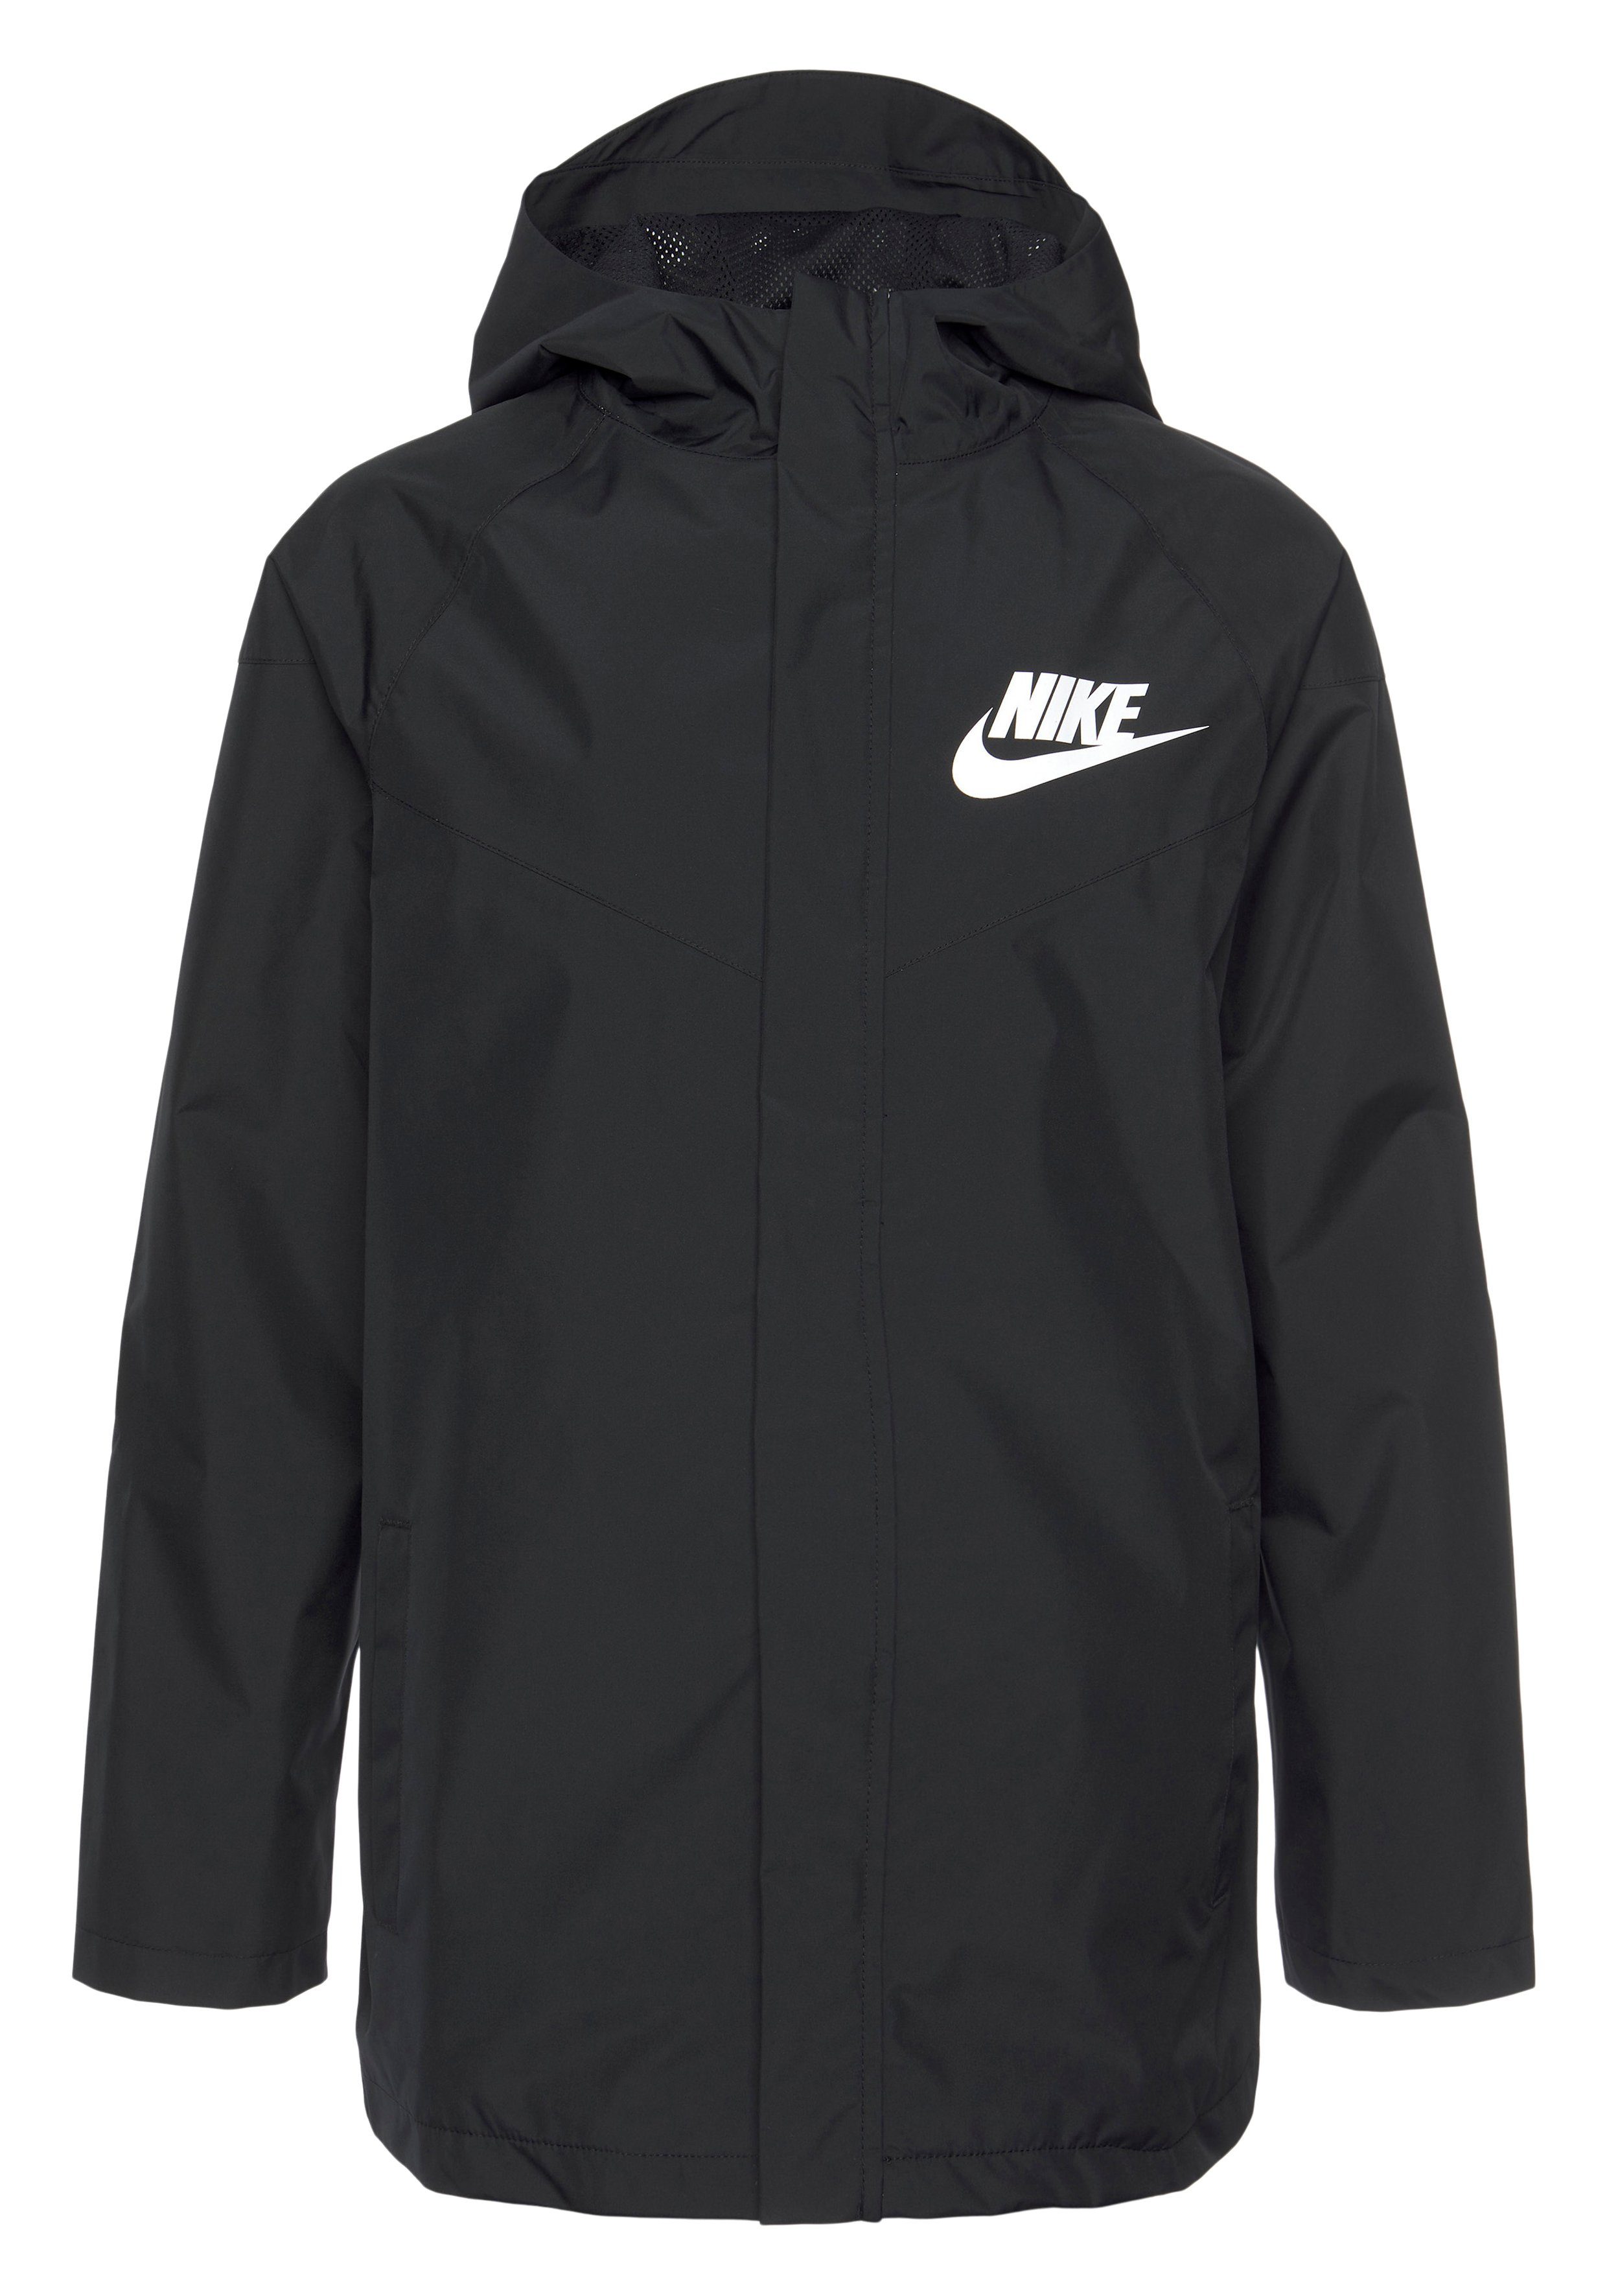 Nike Jacket Windrunner BLACK/BLACK/WHITE Windbreaker Sportswear Kids' Storm-FIT (Boys) Big